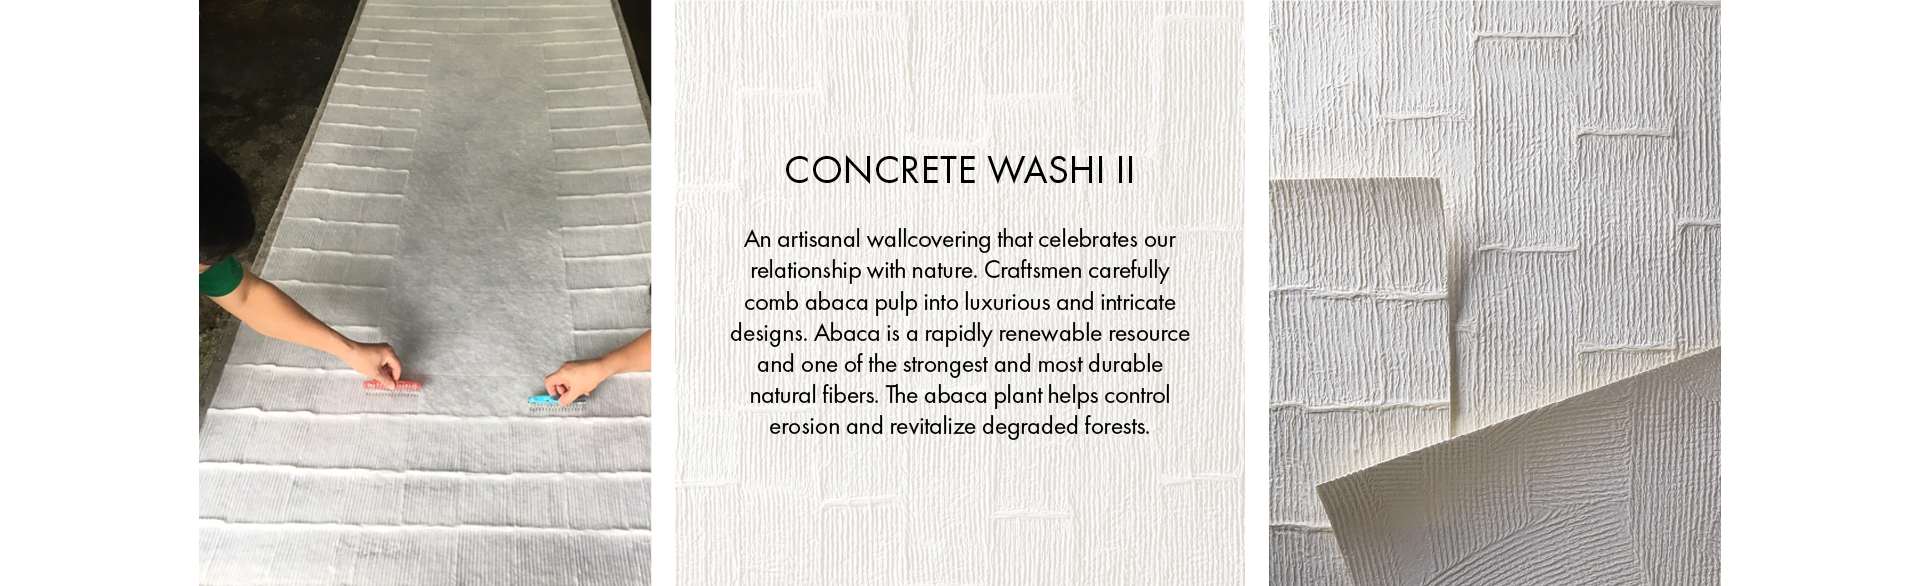 Concrete Washi